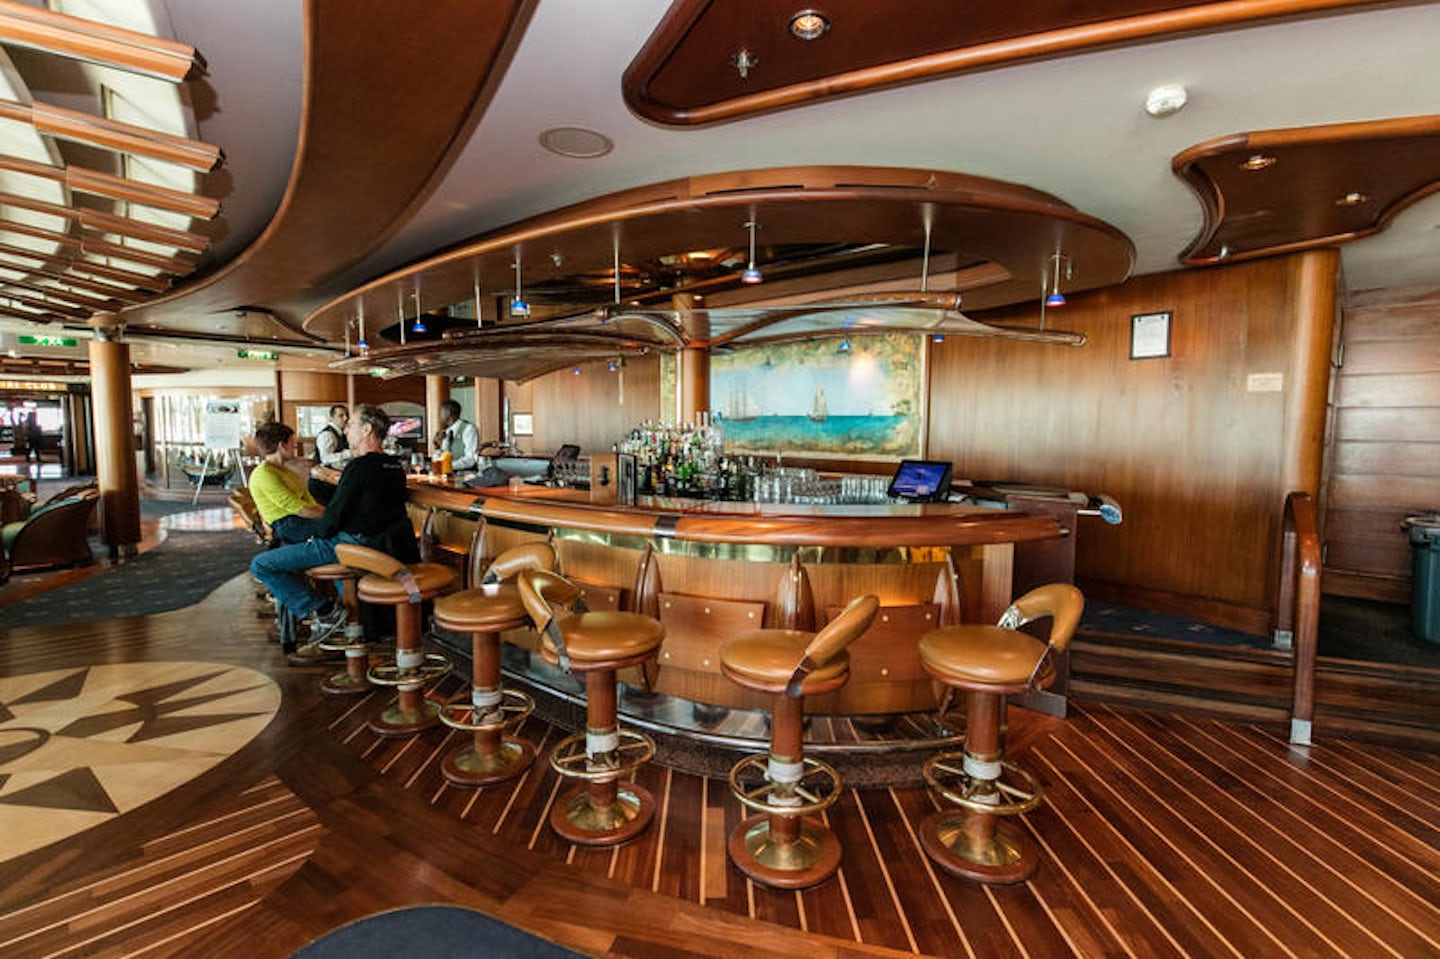 bar on board cruise ships